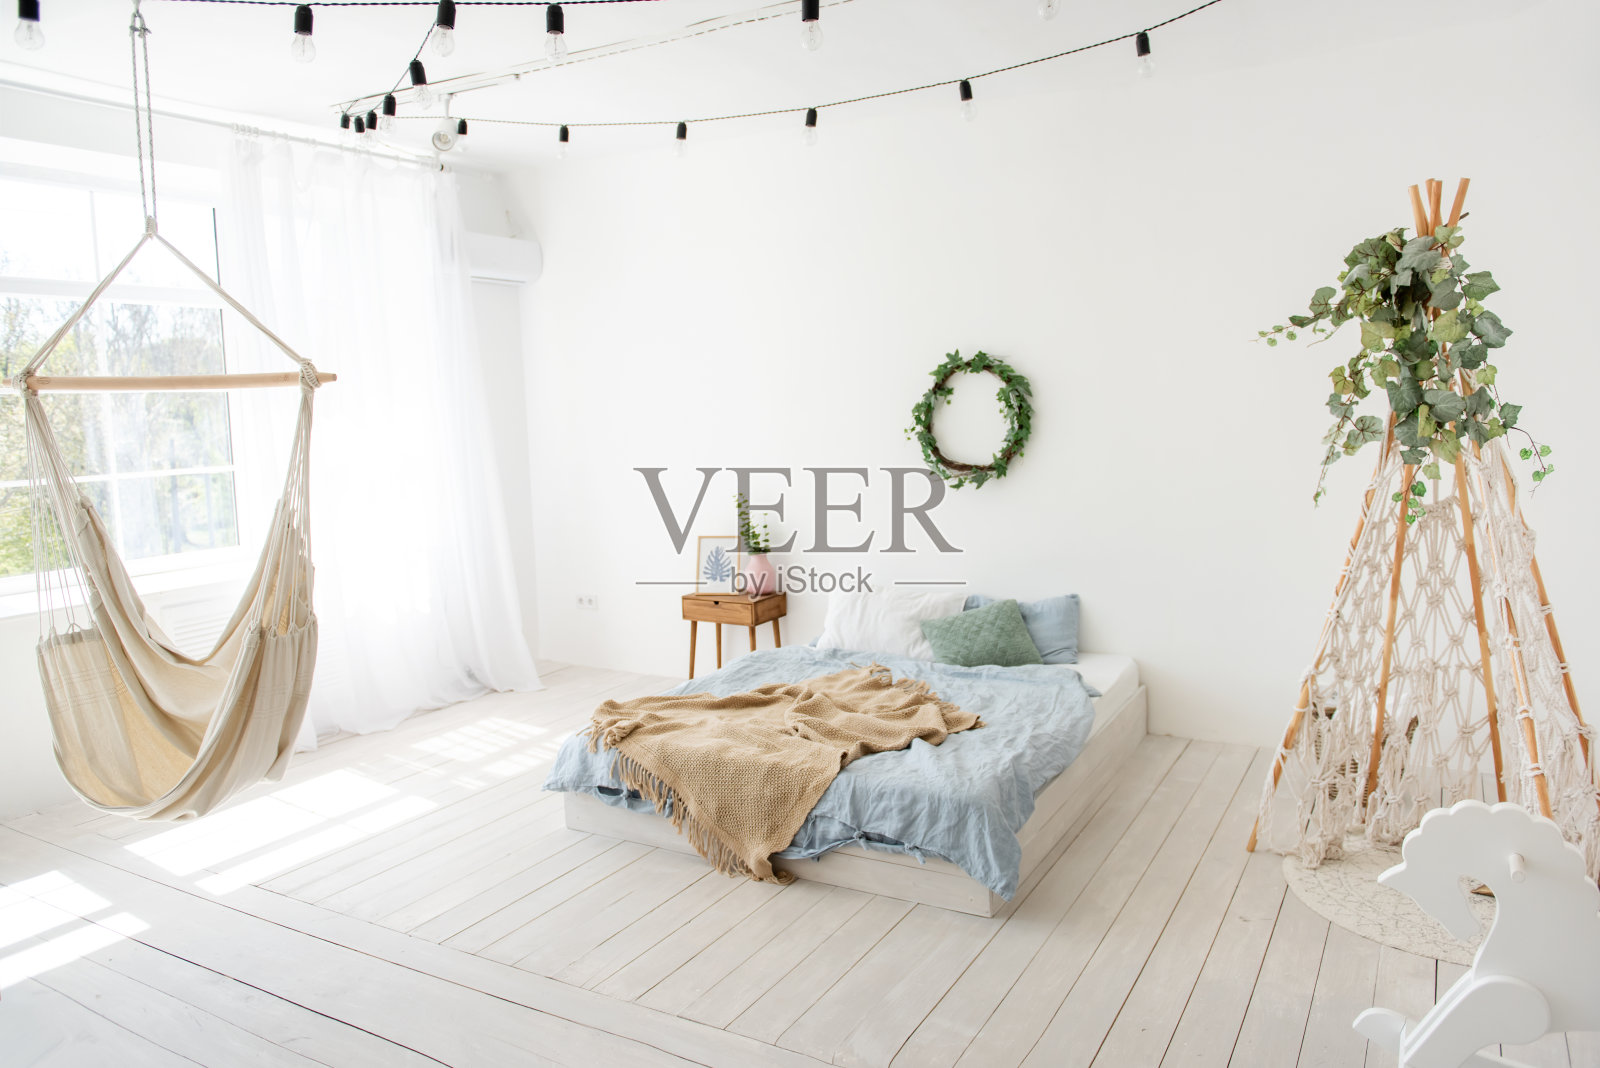 斯堪的纳维亚风格的时尚，时尚的室内。在白色的阁楼房间里，有绿色常春藤的wigwan流苏，地板上有床，木制摇木马，窗边挂着手工制作的吊床。本空间照片摄影图片